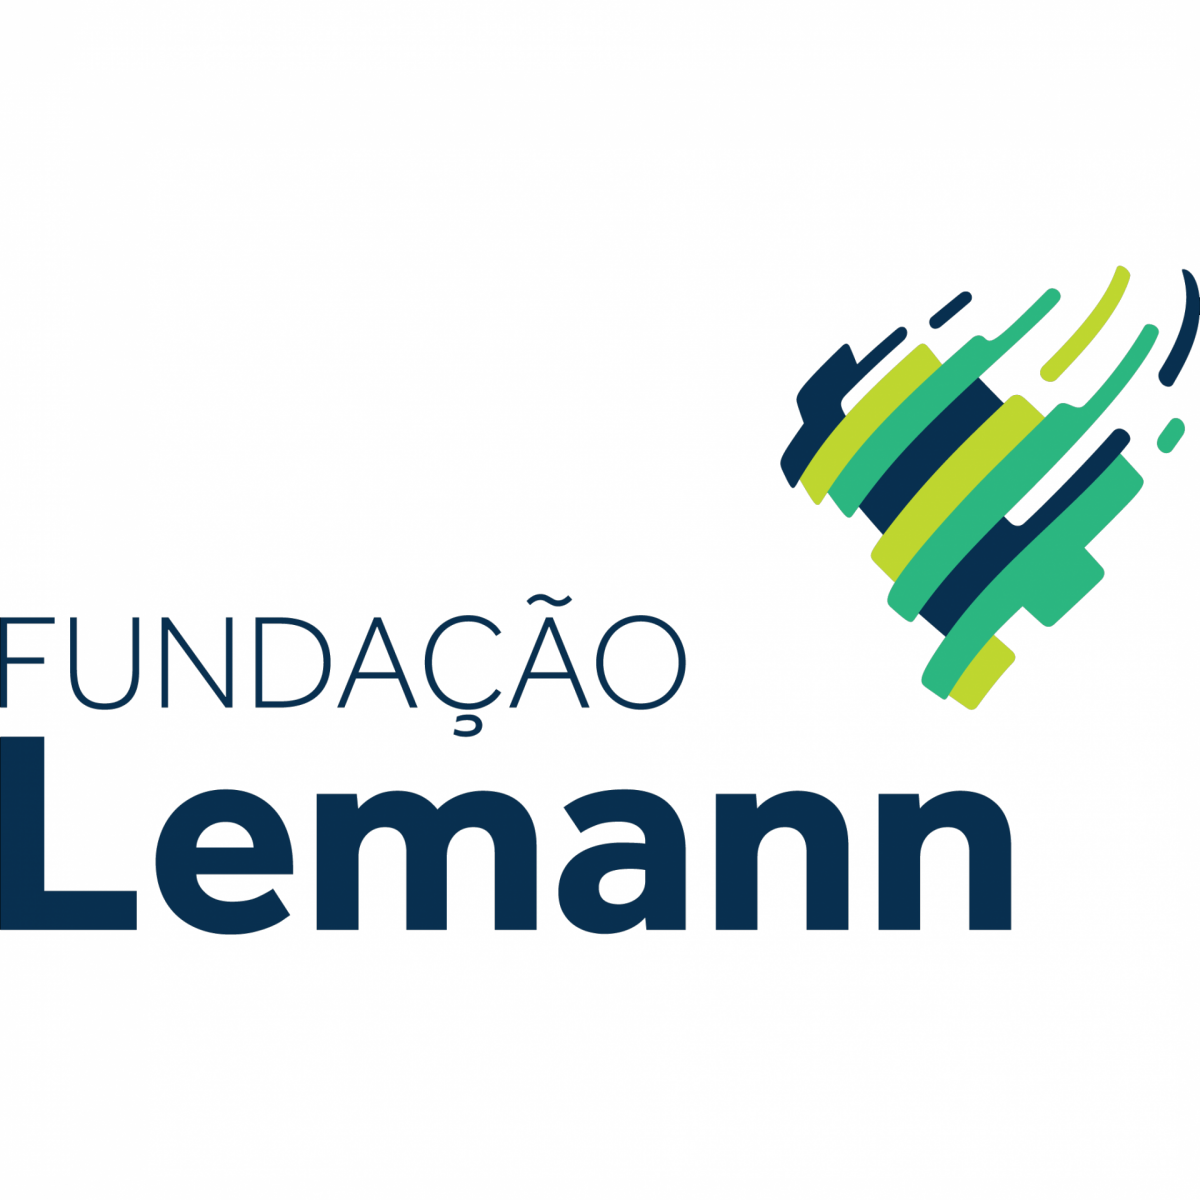 SEMED PROMOVE OFICINA EM PARCERIA COM A FUNDAÇÃO LEMANN - News Rondônia